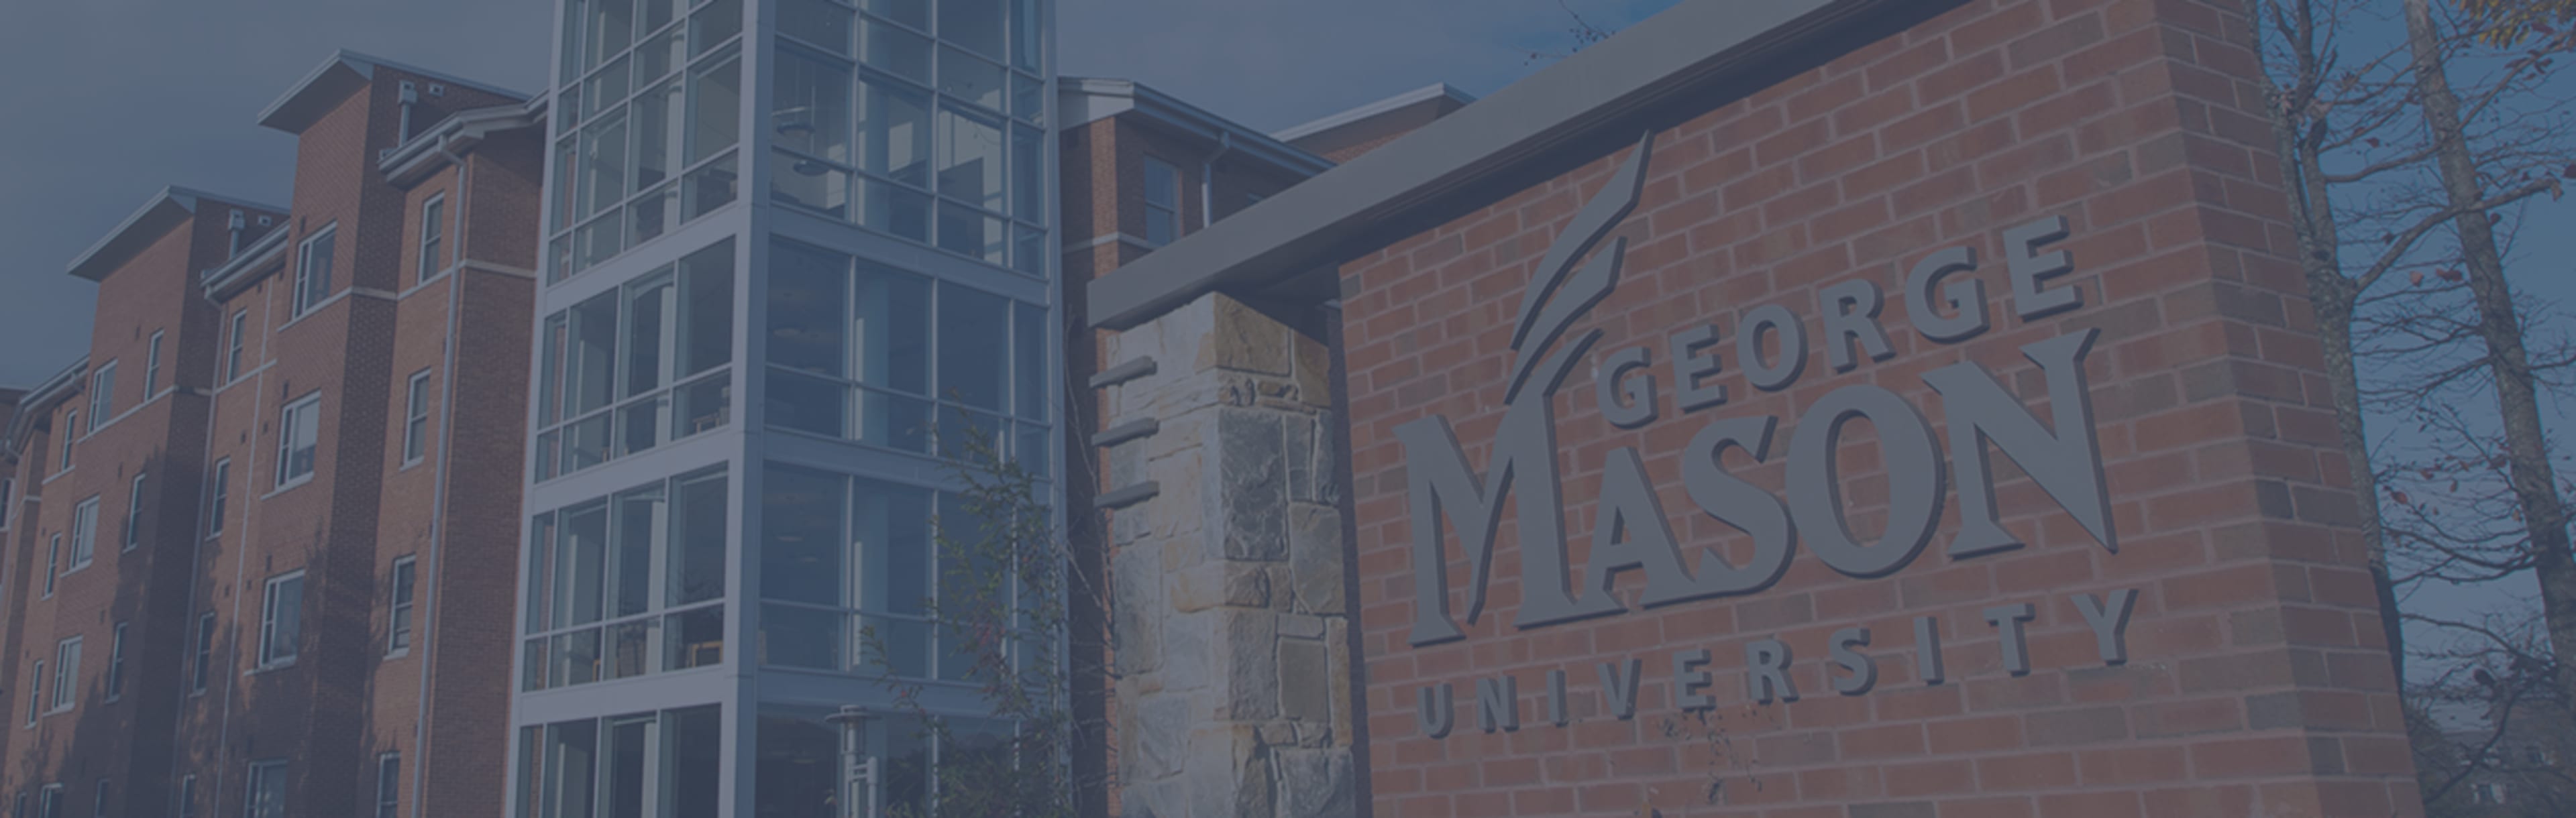 George Mason University Online Master of Science en conception et technologie d'apprentissage